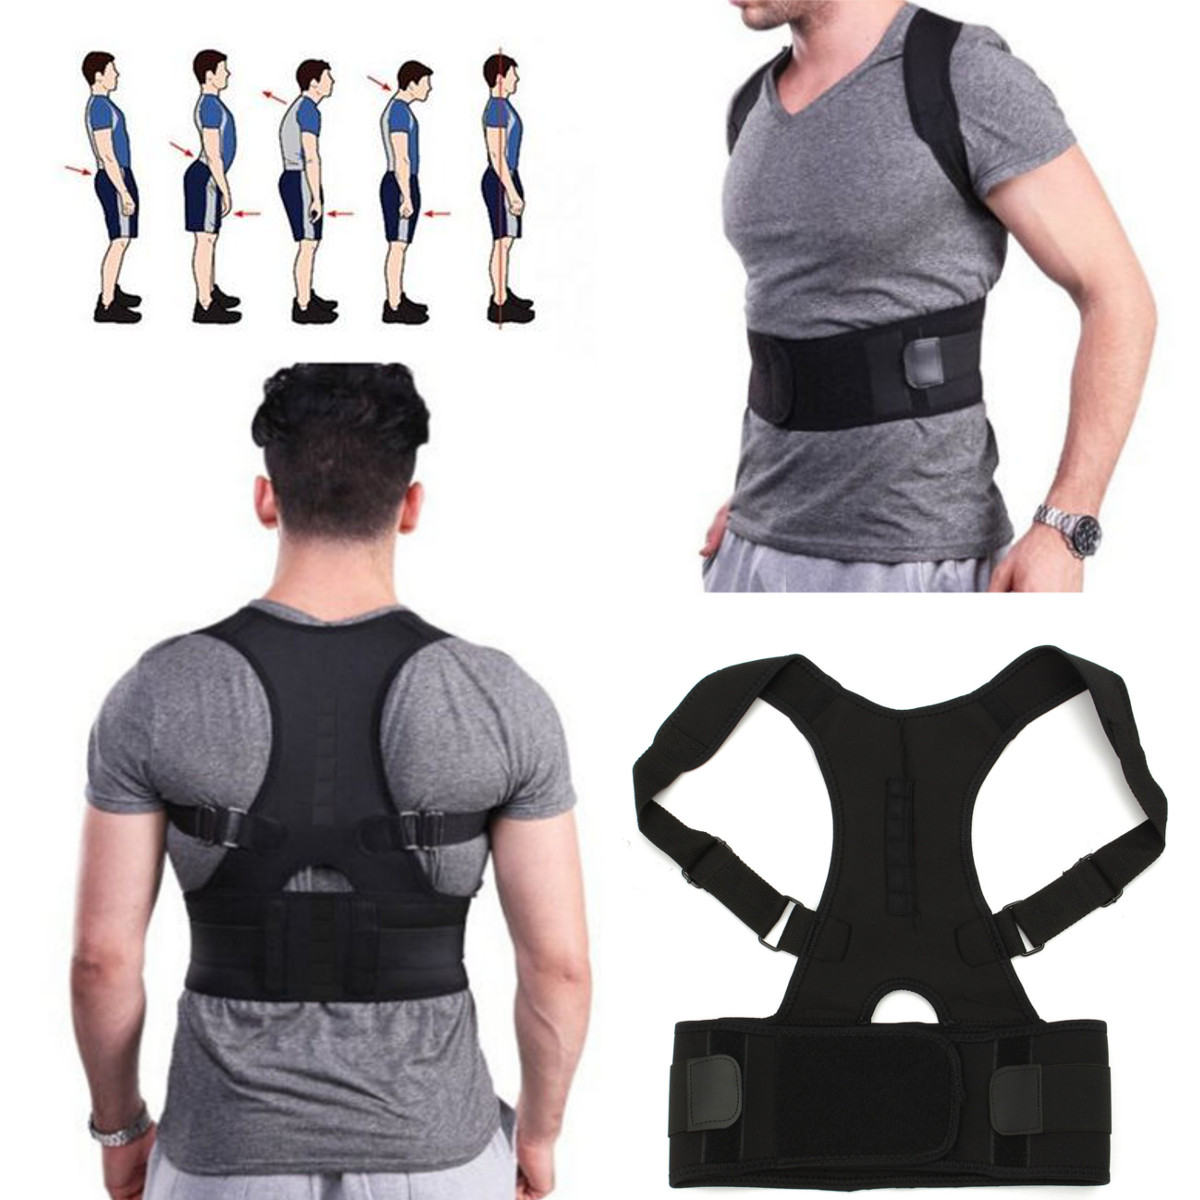 

Fully Adjustable Hunchbacked Posture Corrector Lumbar Back Magnets Support Brace Shoulder Band Belt